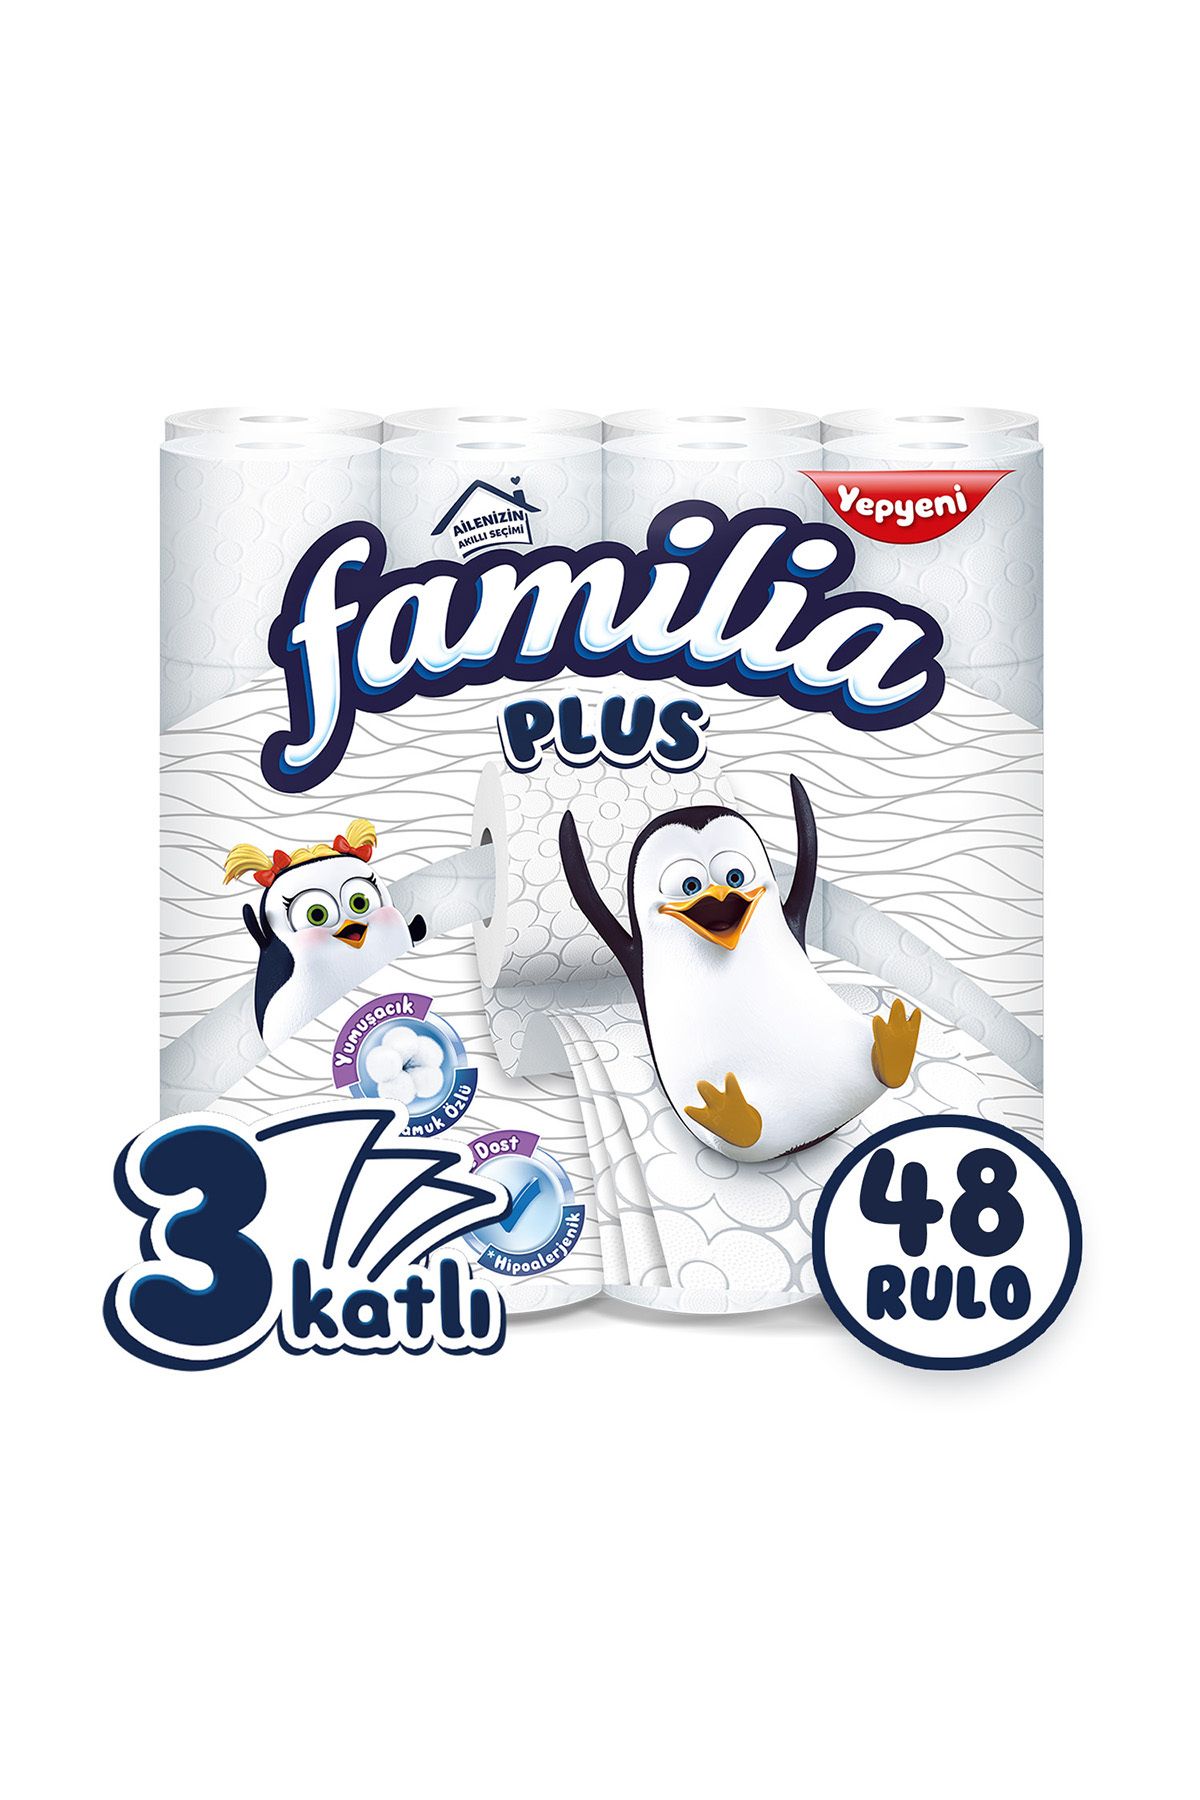 Familia Plus Tuvalet Kağıdı 48 Rulo